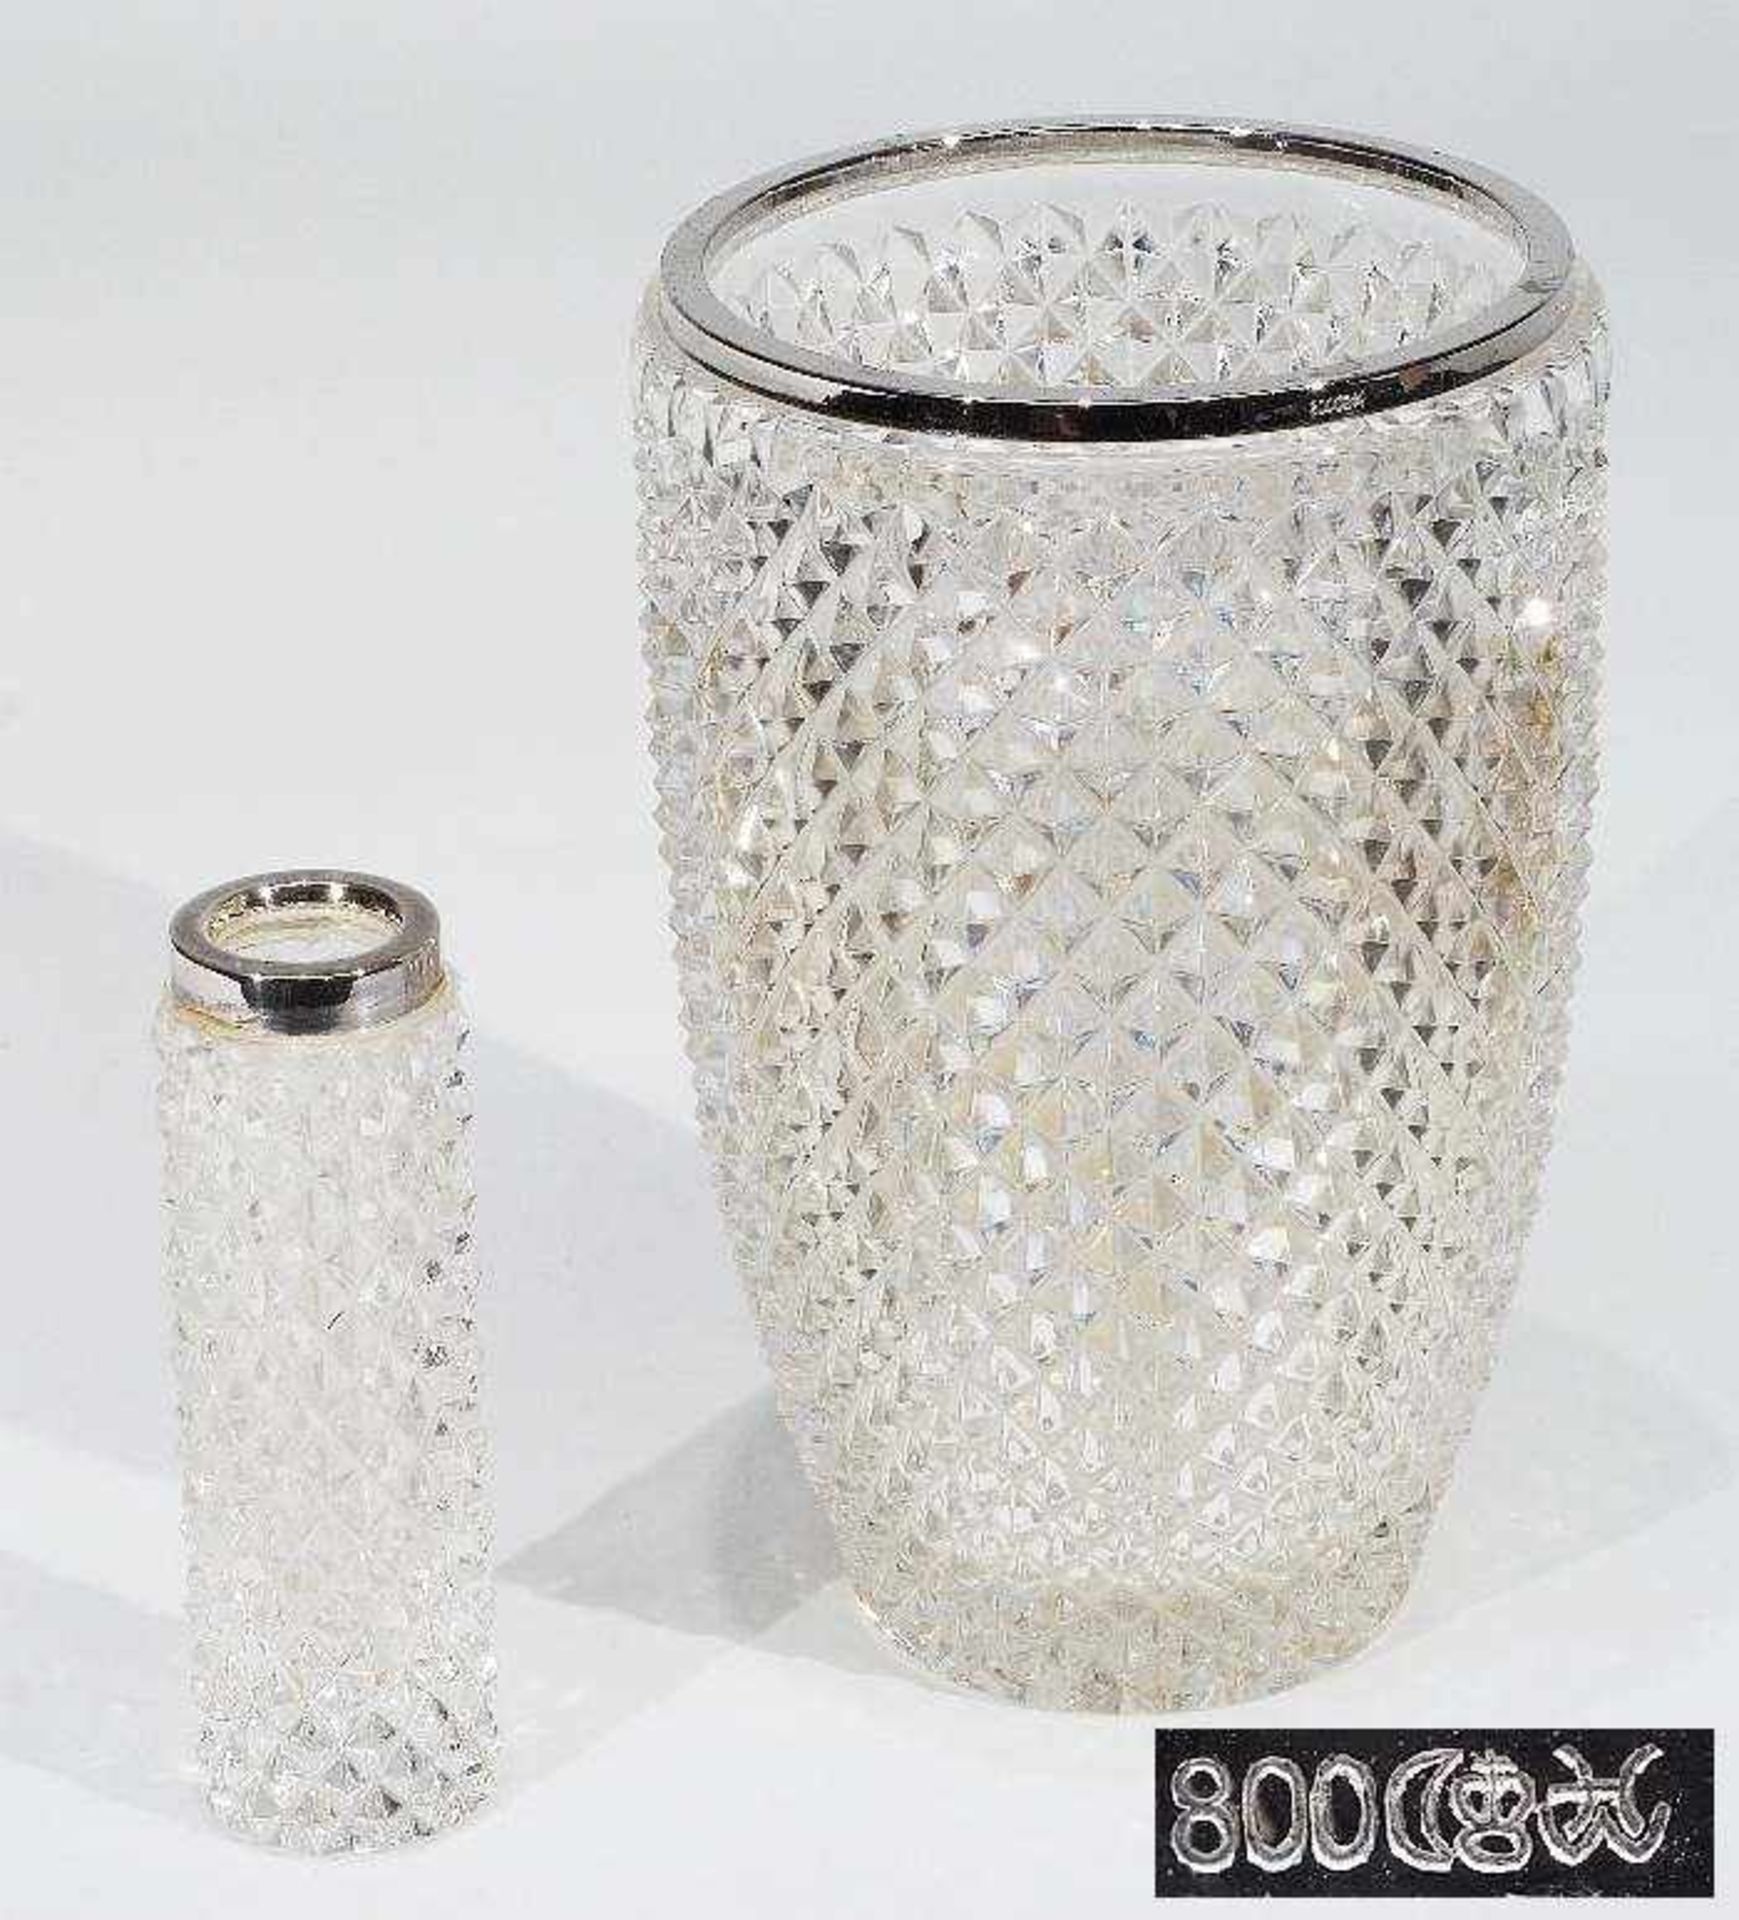 Zwei Vasen, Rand mit 800/925er Silbermontierung. Zwei verschiedene Formen, dickwandiges Klarglas im